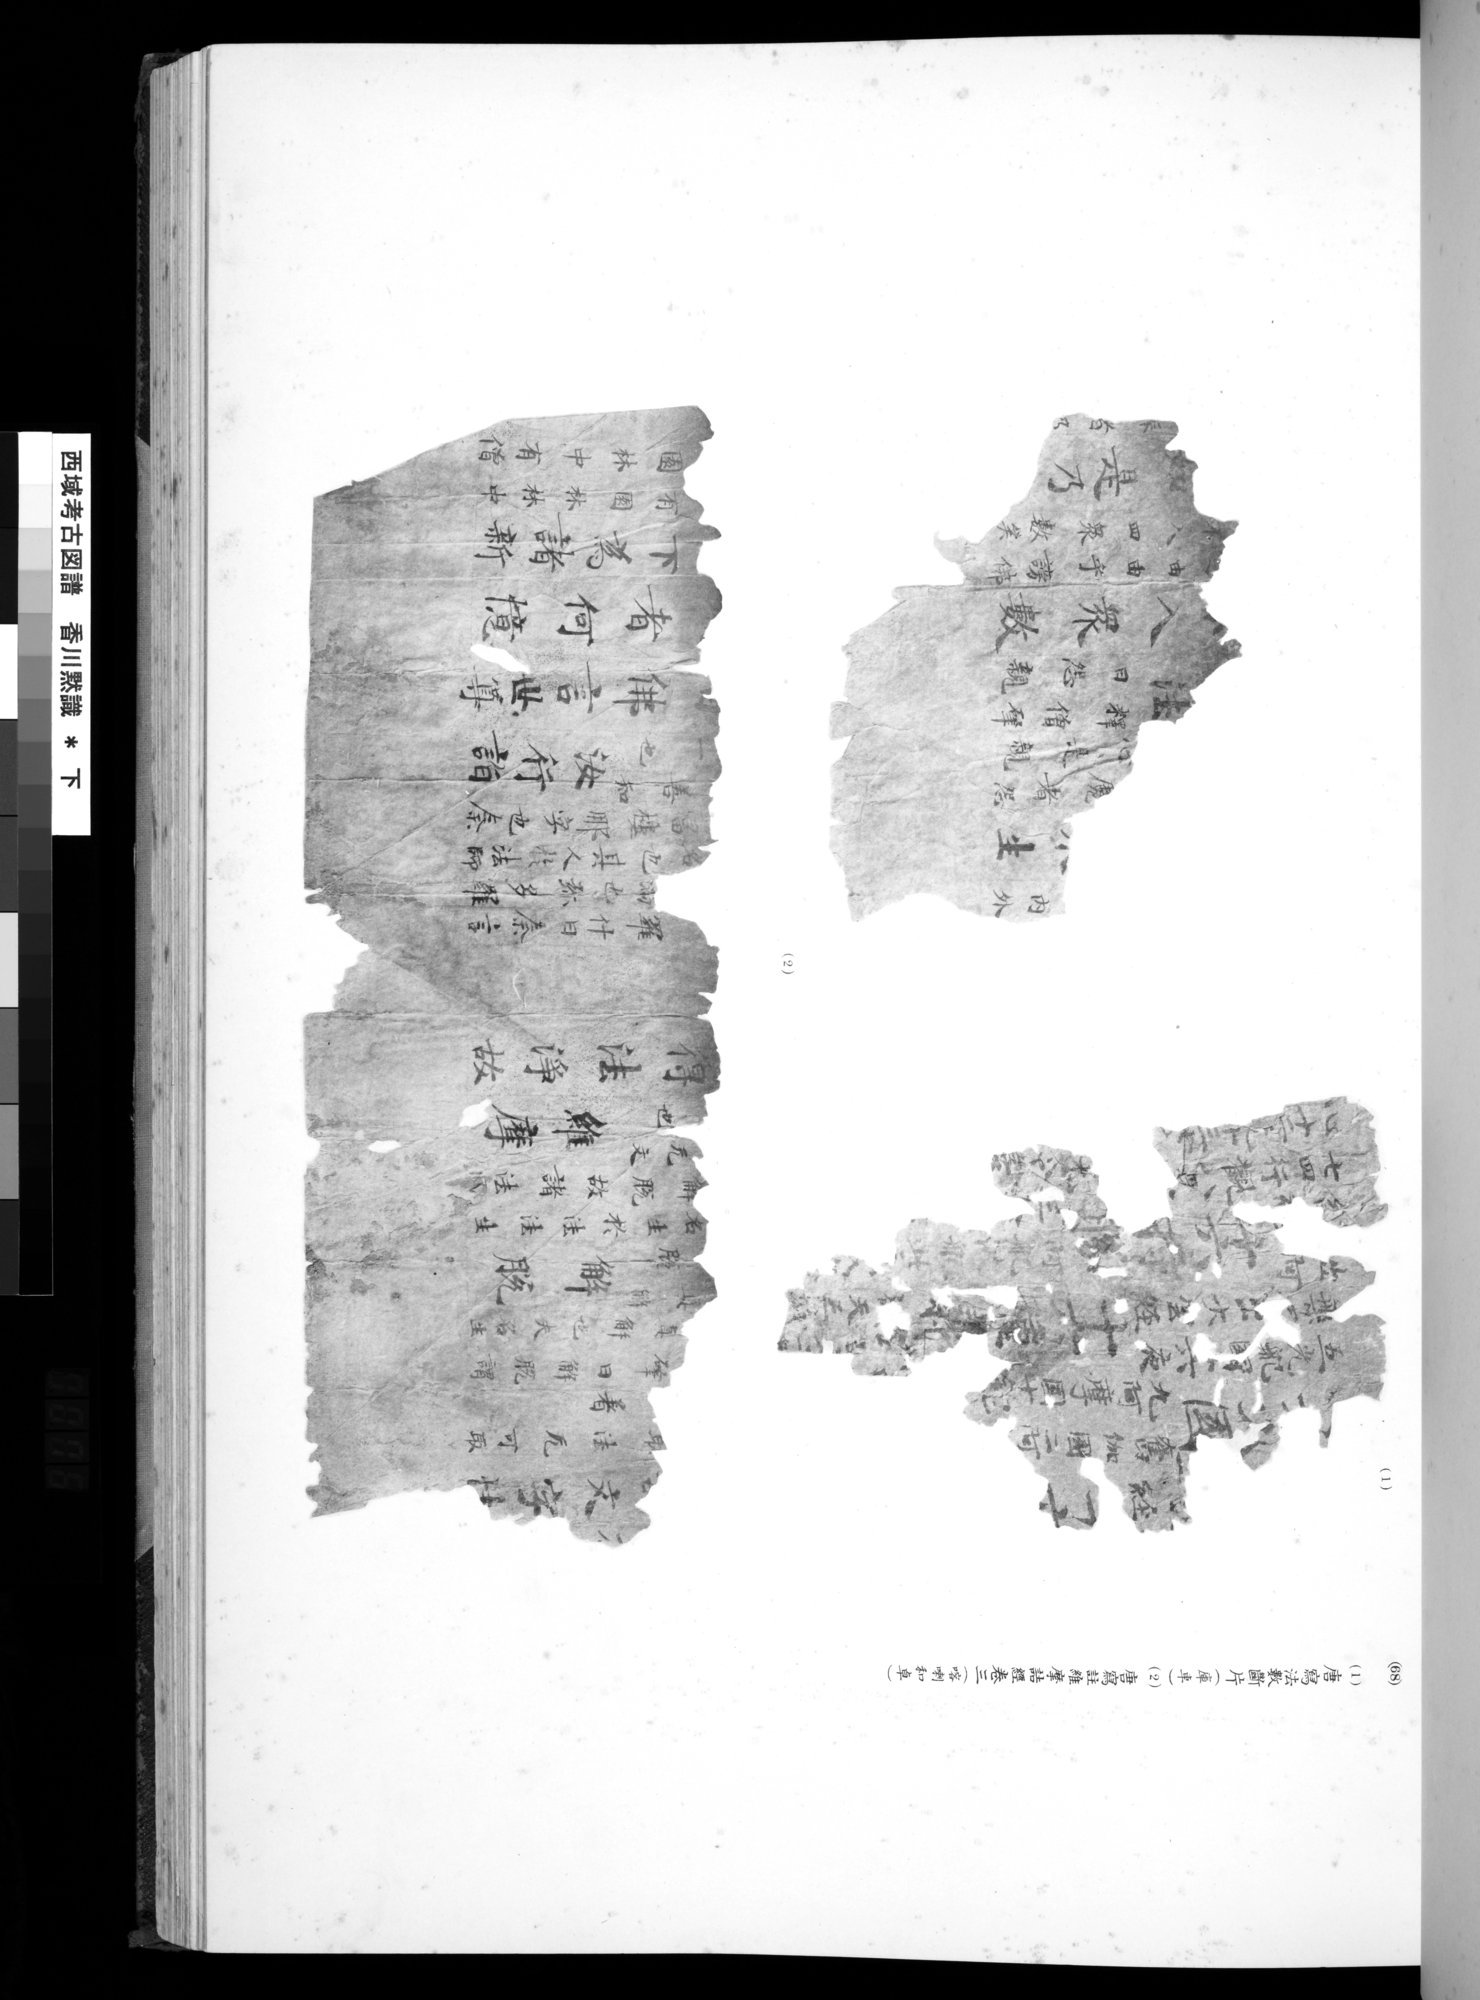 西域考古図譜 : vol.2 / Page 151 (Grayscale High Resolution Image)